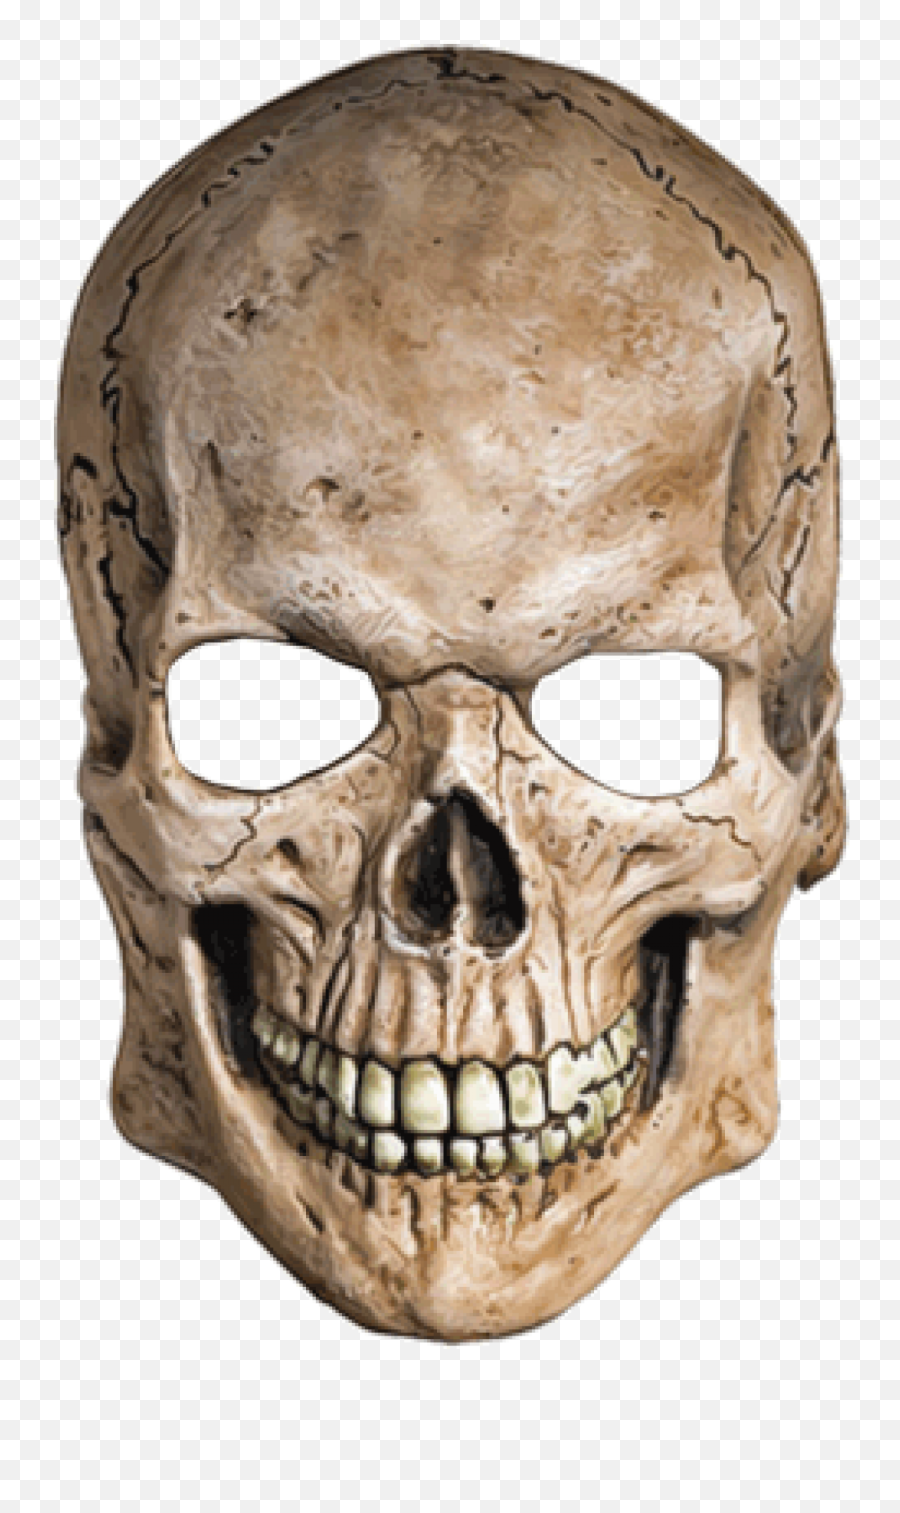 Skull Png Images U2013 The Symbol Of Death Skull Png Images Emoji,White Skull Png